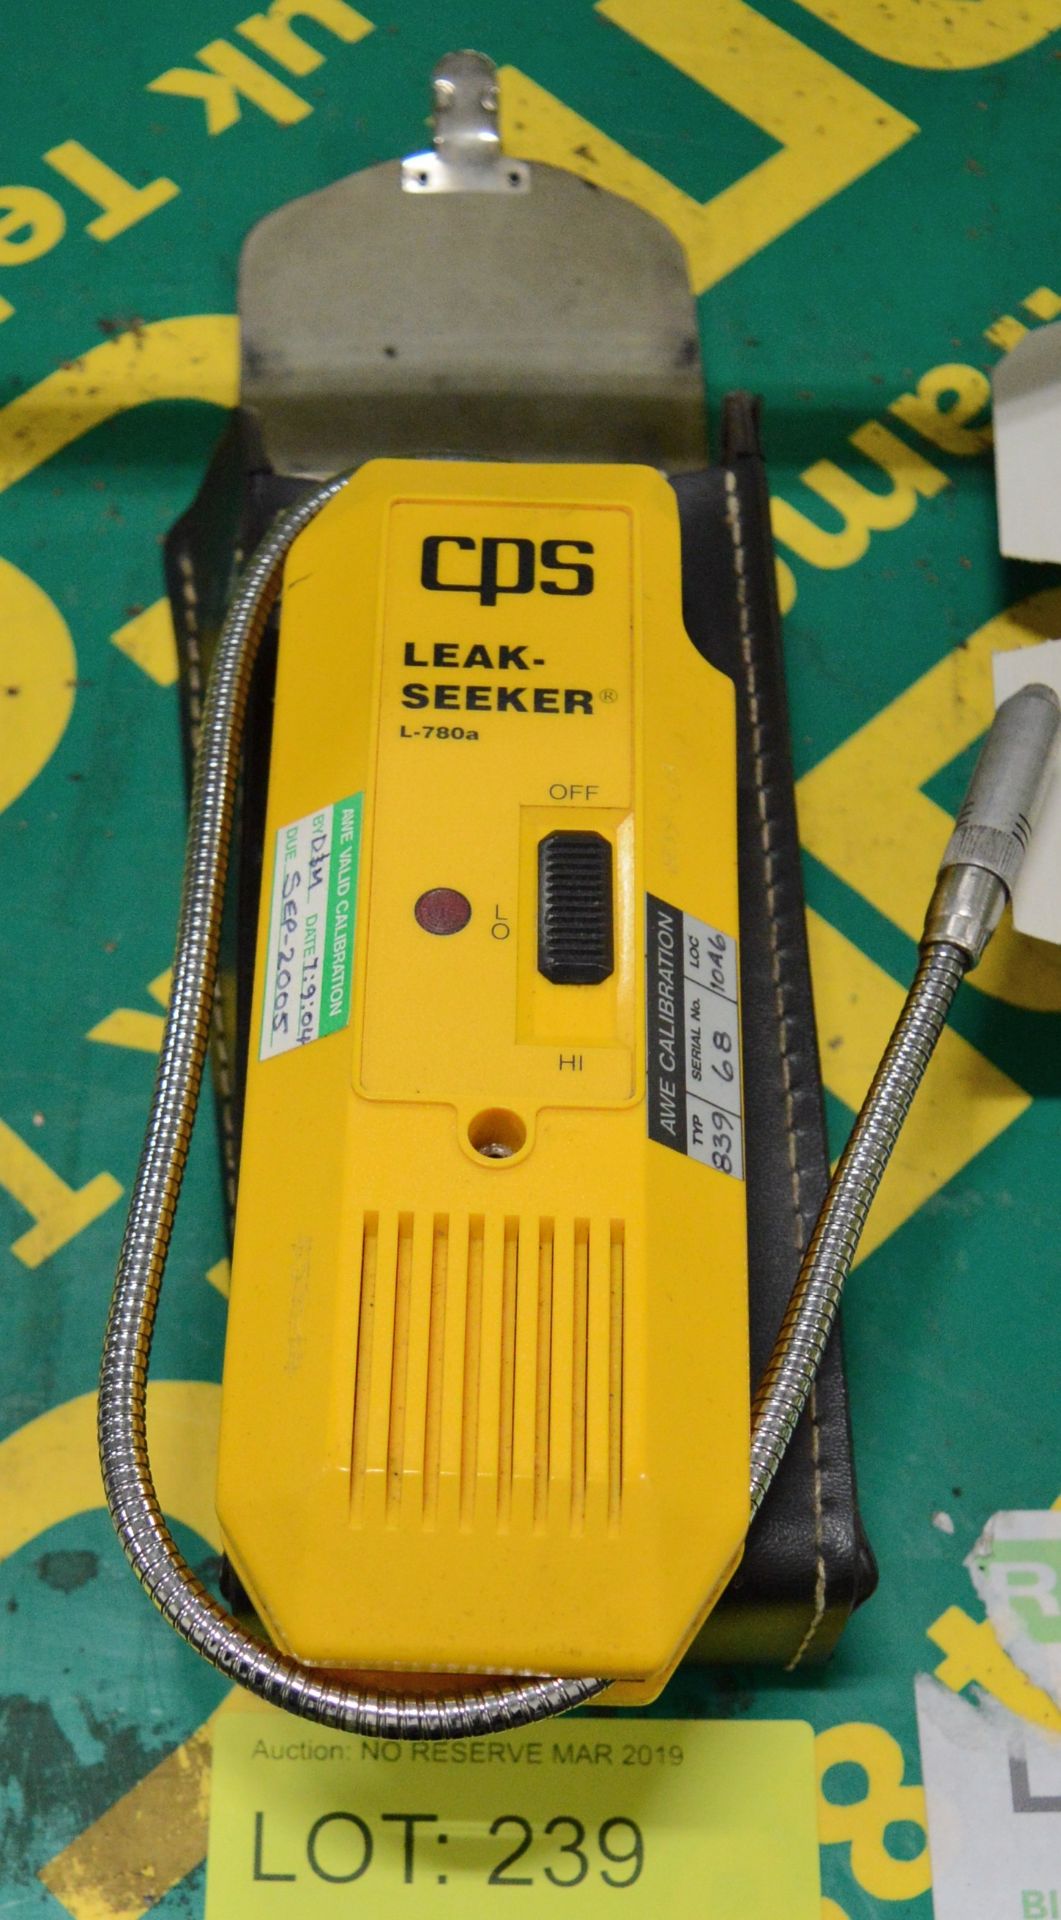 CPS L-780a Leak Seeker.